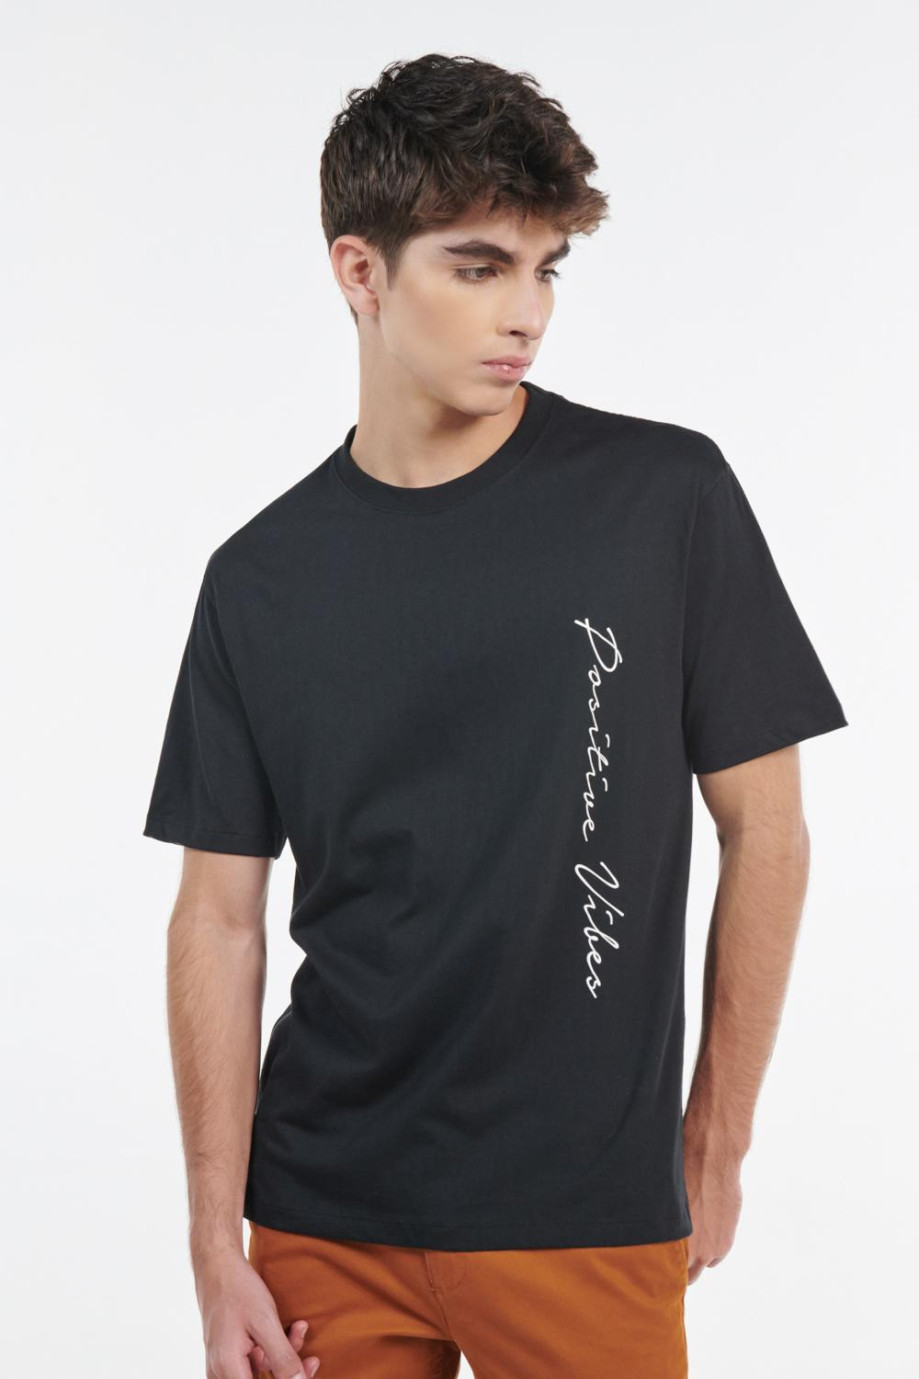 Camiseta negra con cuello redondo y diseño de texto blanco